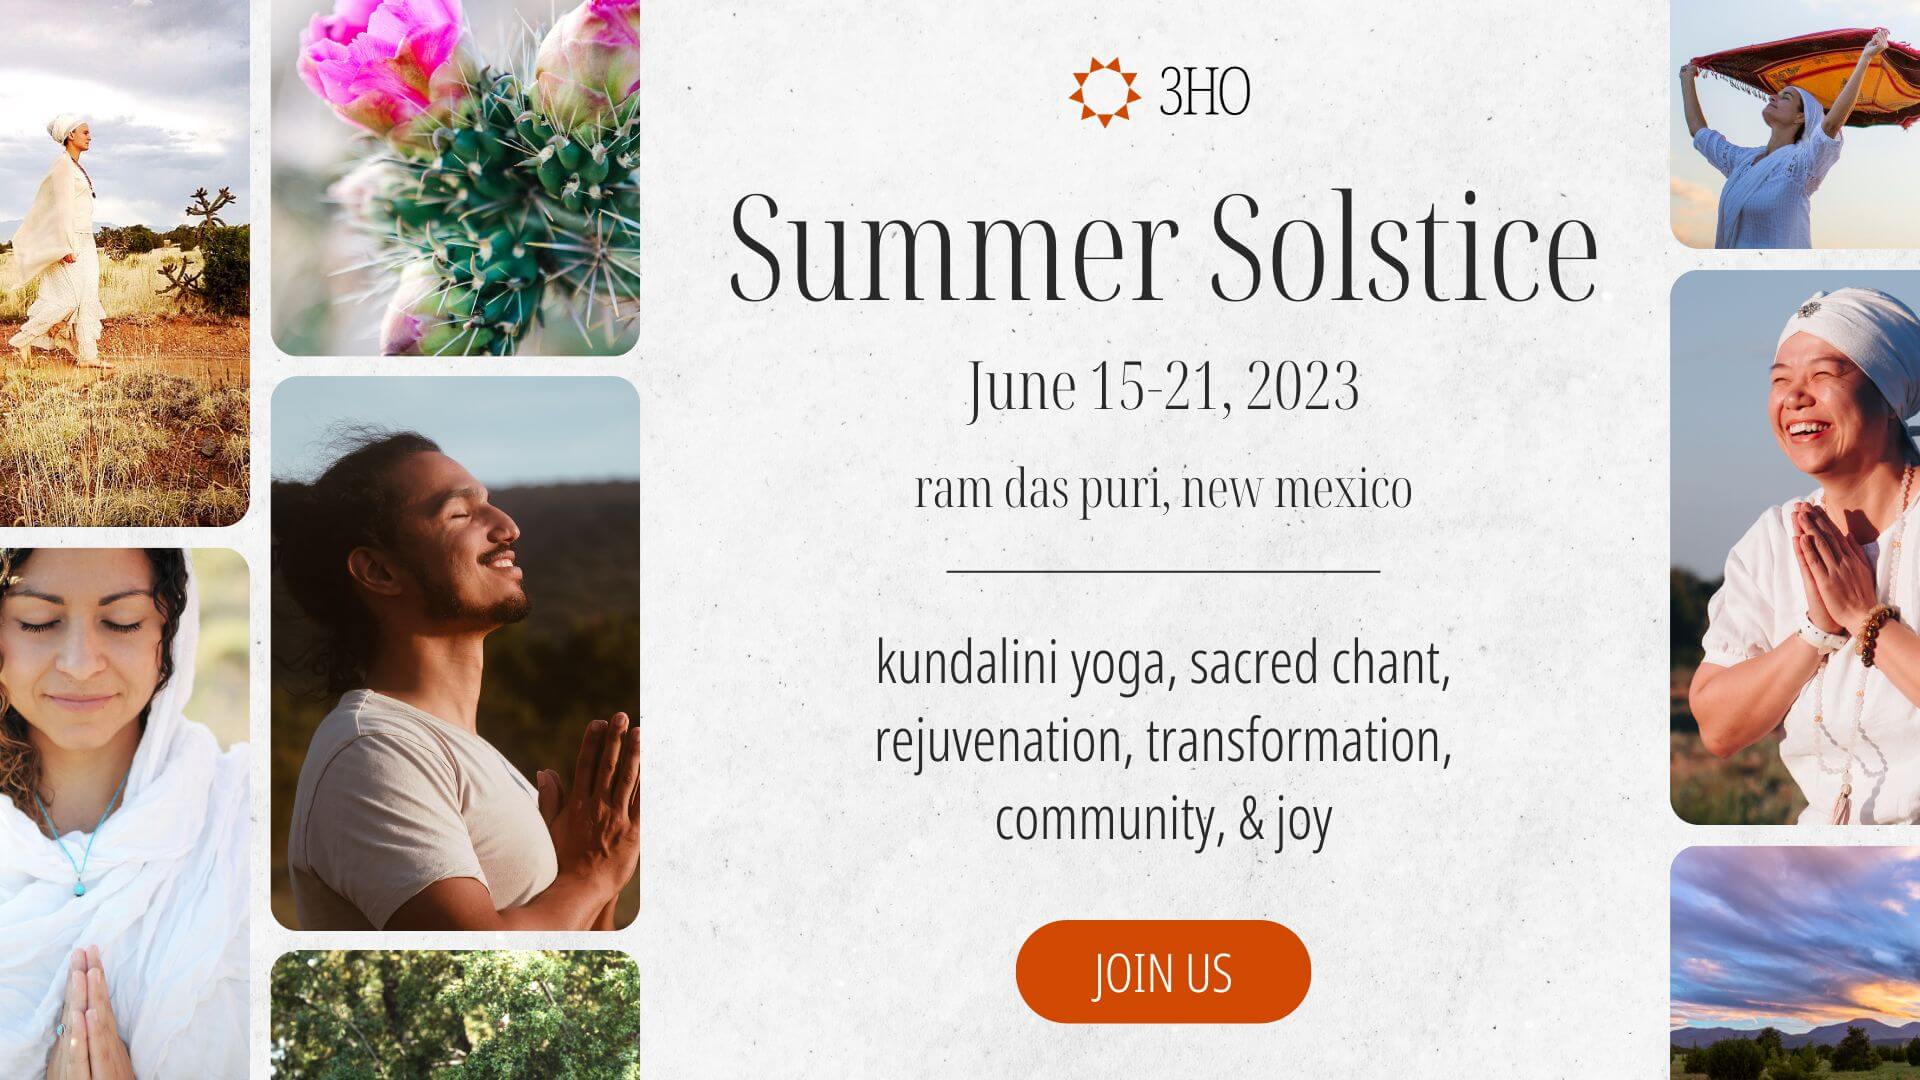 Summer Solstice 2023 3HO International